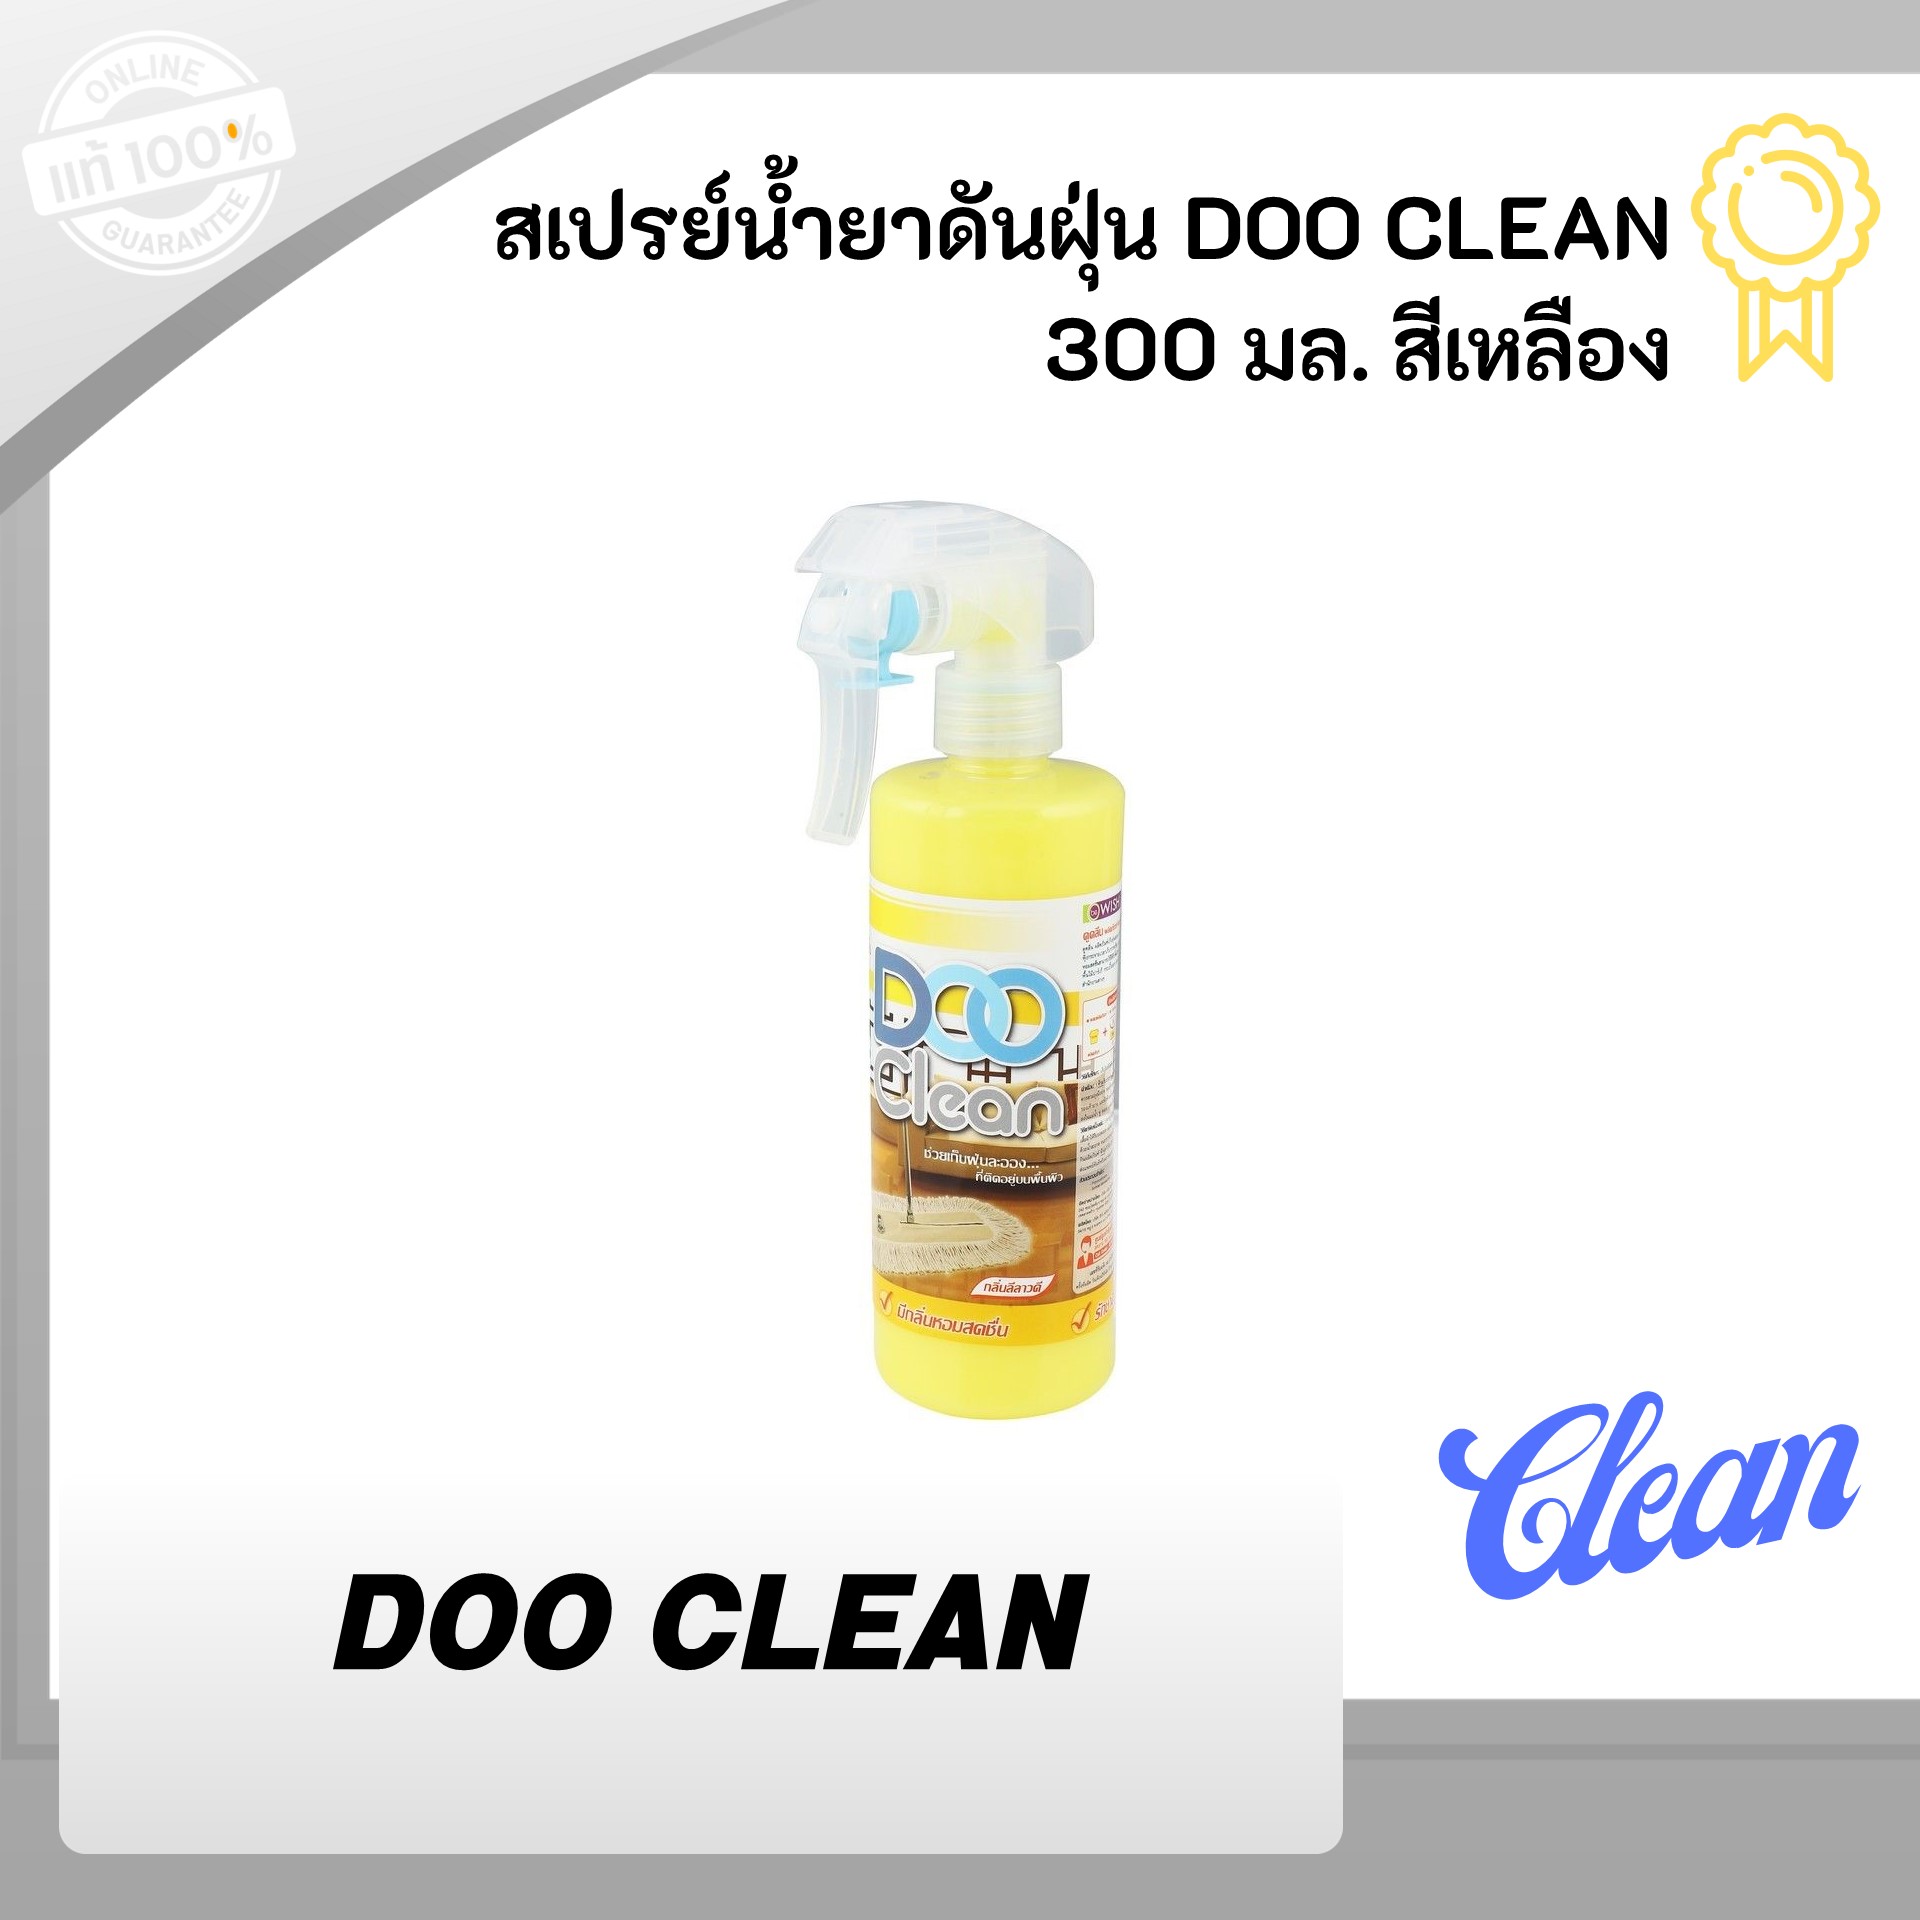 สเปรย์น้ำยาดันฝุ่น DOO CLEAN 300 มล. สีเหลือง กลิ่นลีลาวดี หอมสดชื่น เก็บฝุ่นละออง ทำความสะอาด ฝุ่นฟุ้งกระจาย เก็บกวาด ใช้ได้กับทุกพื้นผิว